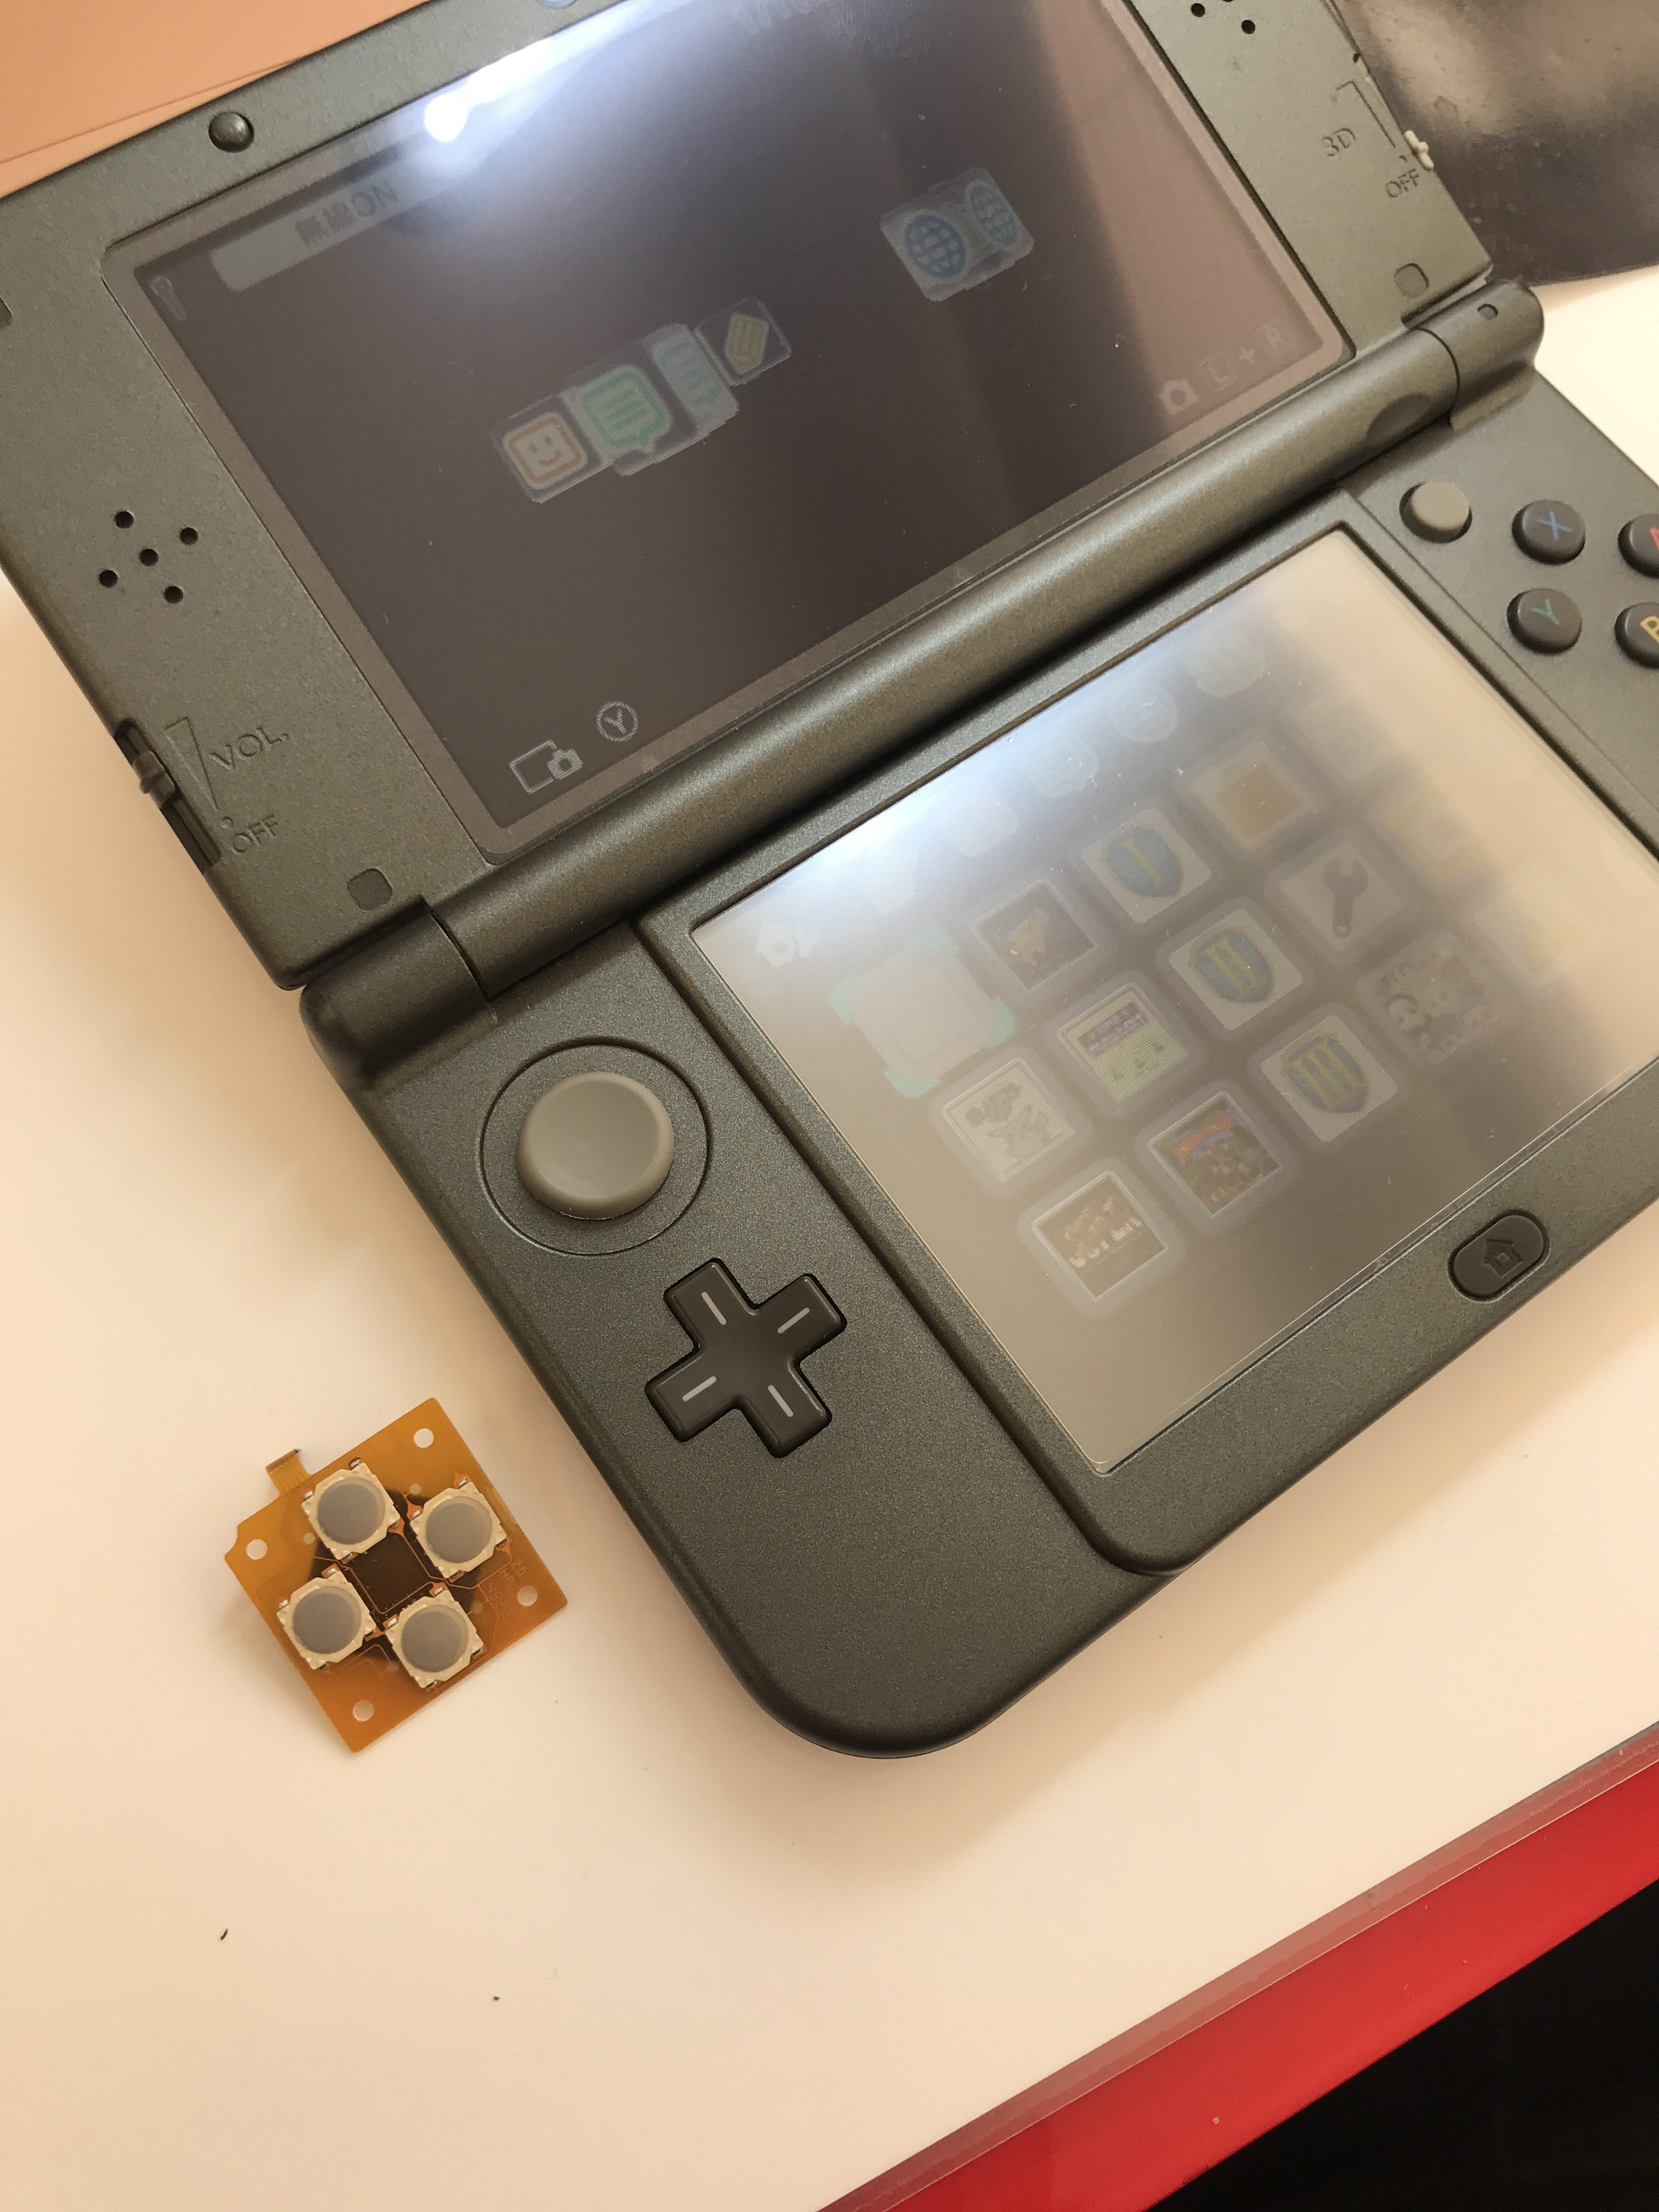 任天堂 New3dsll 十字キーの上が入力されたりされなかったり パーツの交換修理 Switch Nintendo3ds Psp 修理のゲームホスピタル Switch Nintendo3ds ニンテンドーds Psp 修理